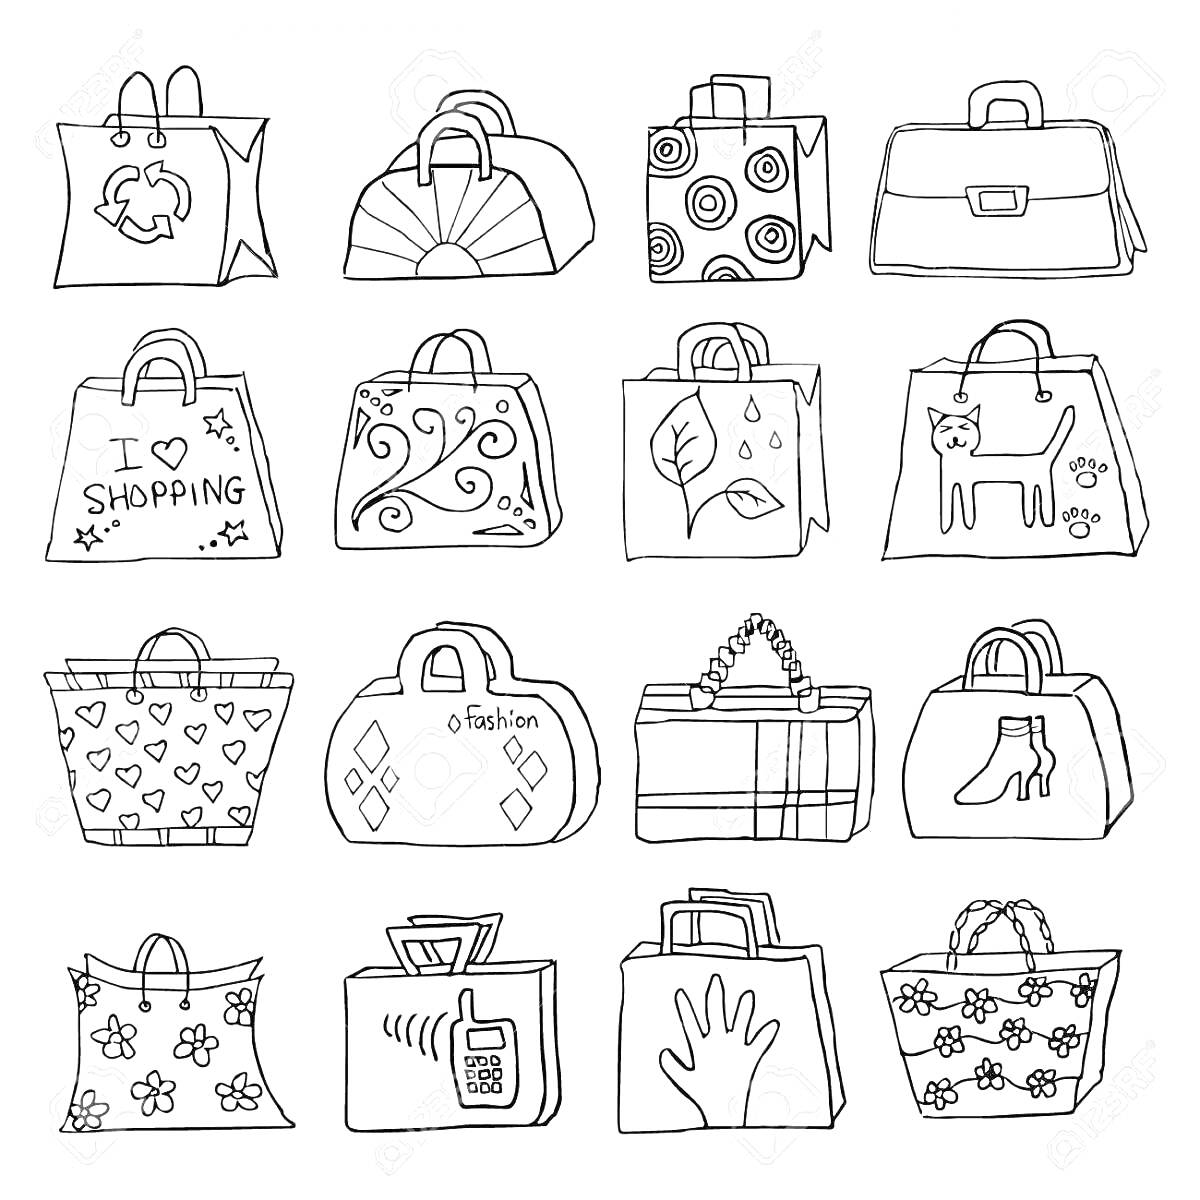 Рисунки на сумках (сумка с символом переработки, сумка с полукруглым узором, сумка с кругами, сумка-портфель, сумка с надписью 